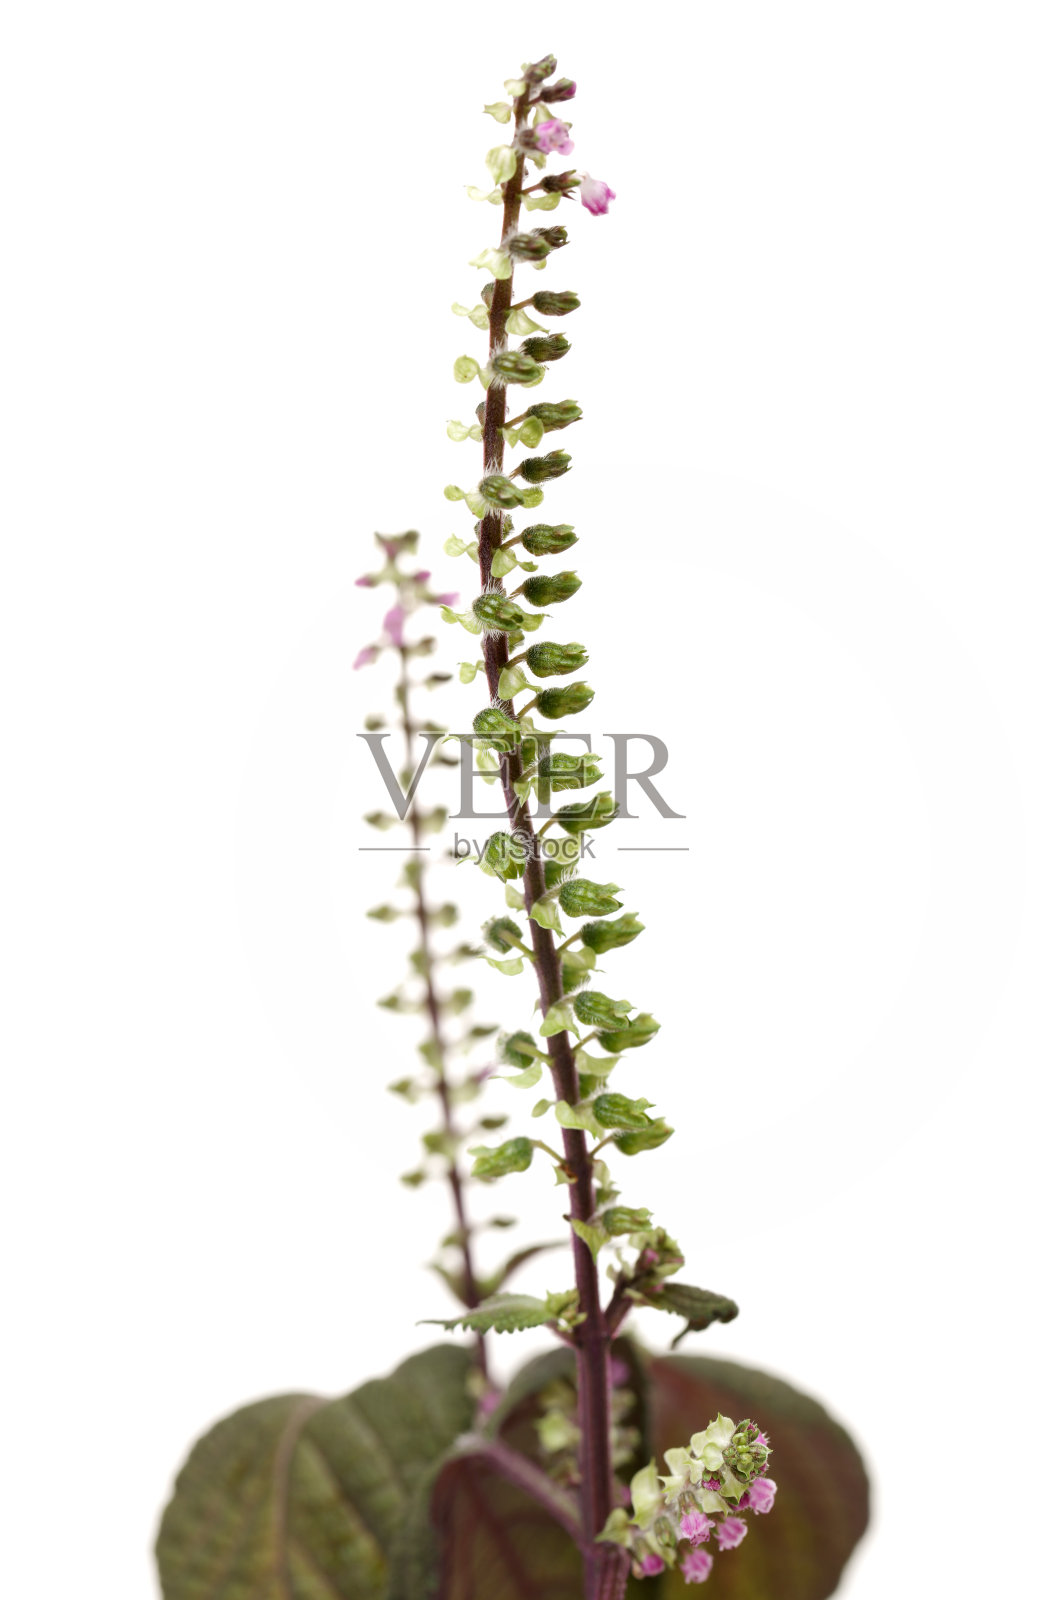 紫苏是用草药种子在传统中草药中分离成白色的背景照片摄影图片